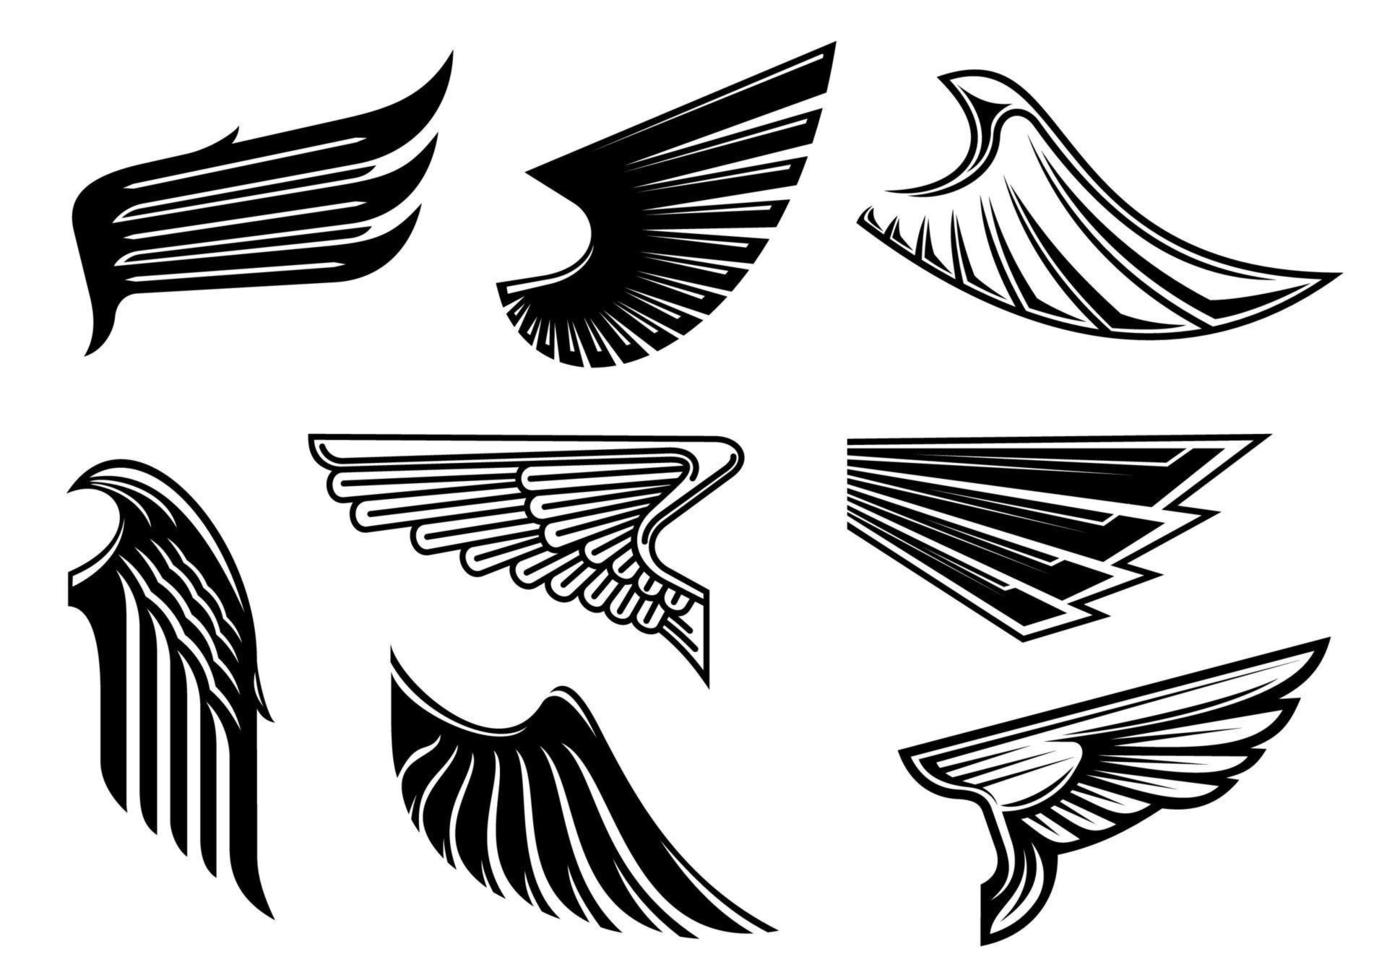 schwarze heraldische und stammesflügelelemente vektor